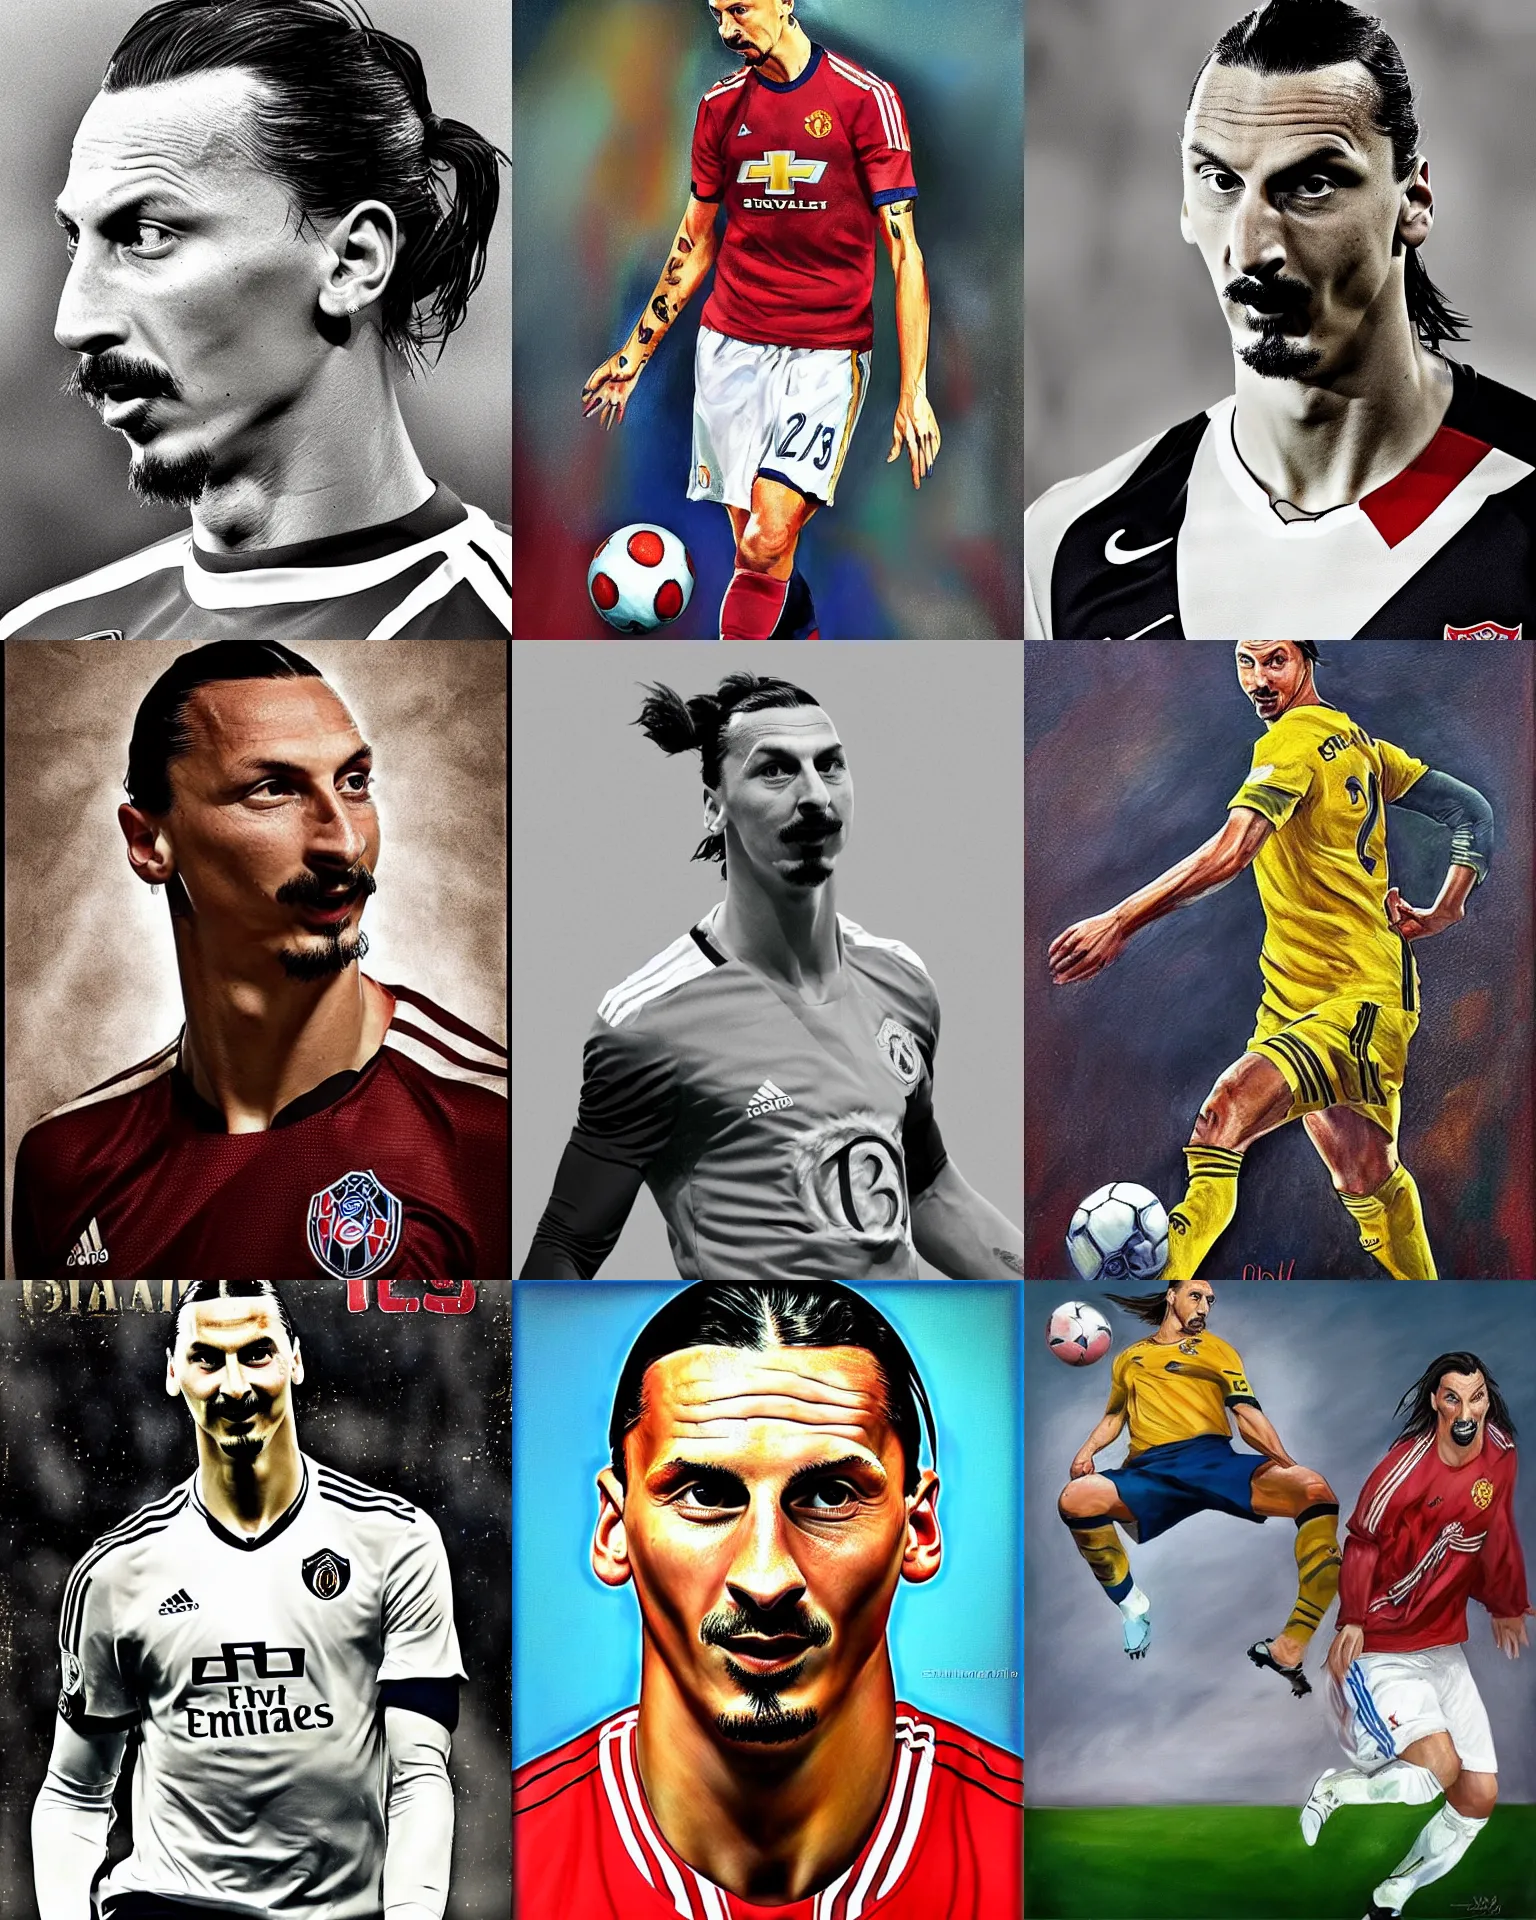 Prompt: Zlatan Ibrahimovic by Salvador Dali